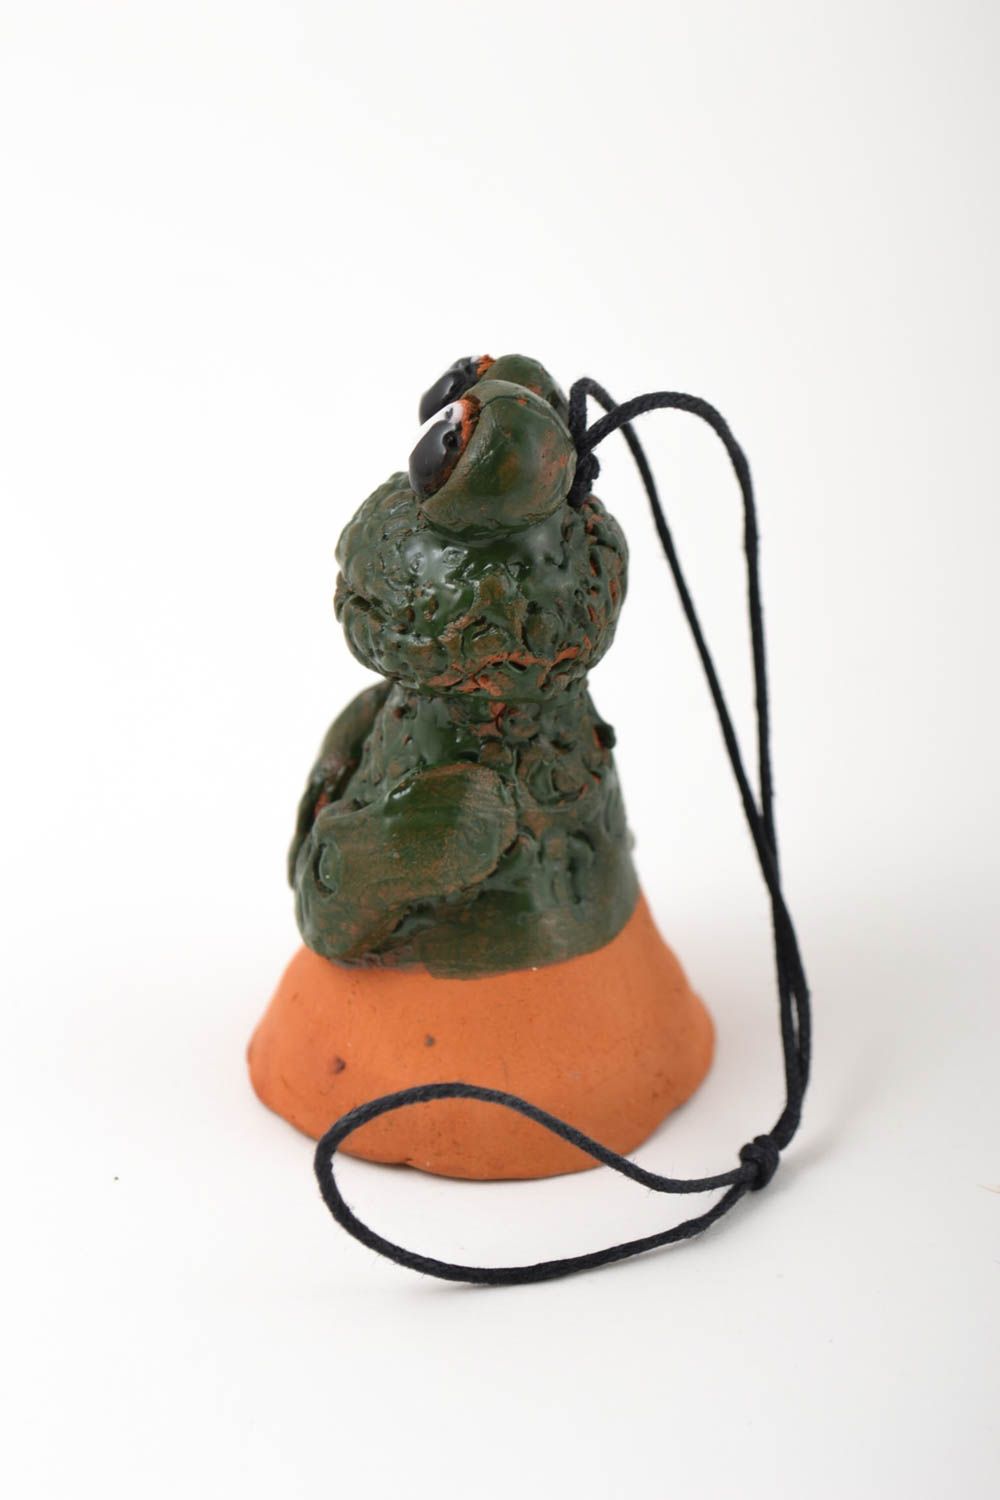 Фигурка ручной работы колокольчик из глины маленькая лягушка глиняный сувенир фото 2